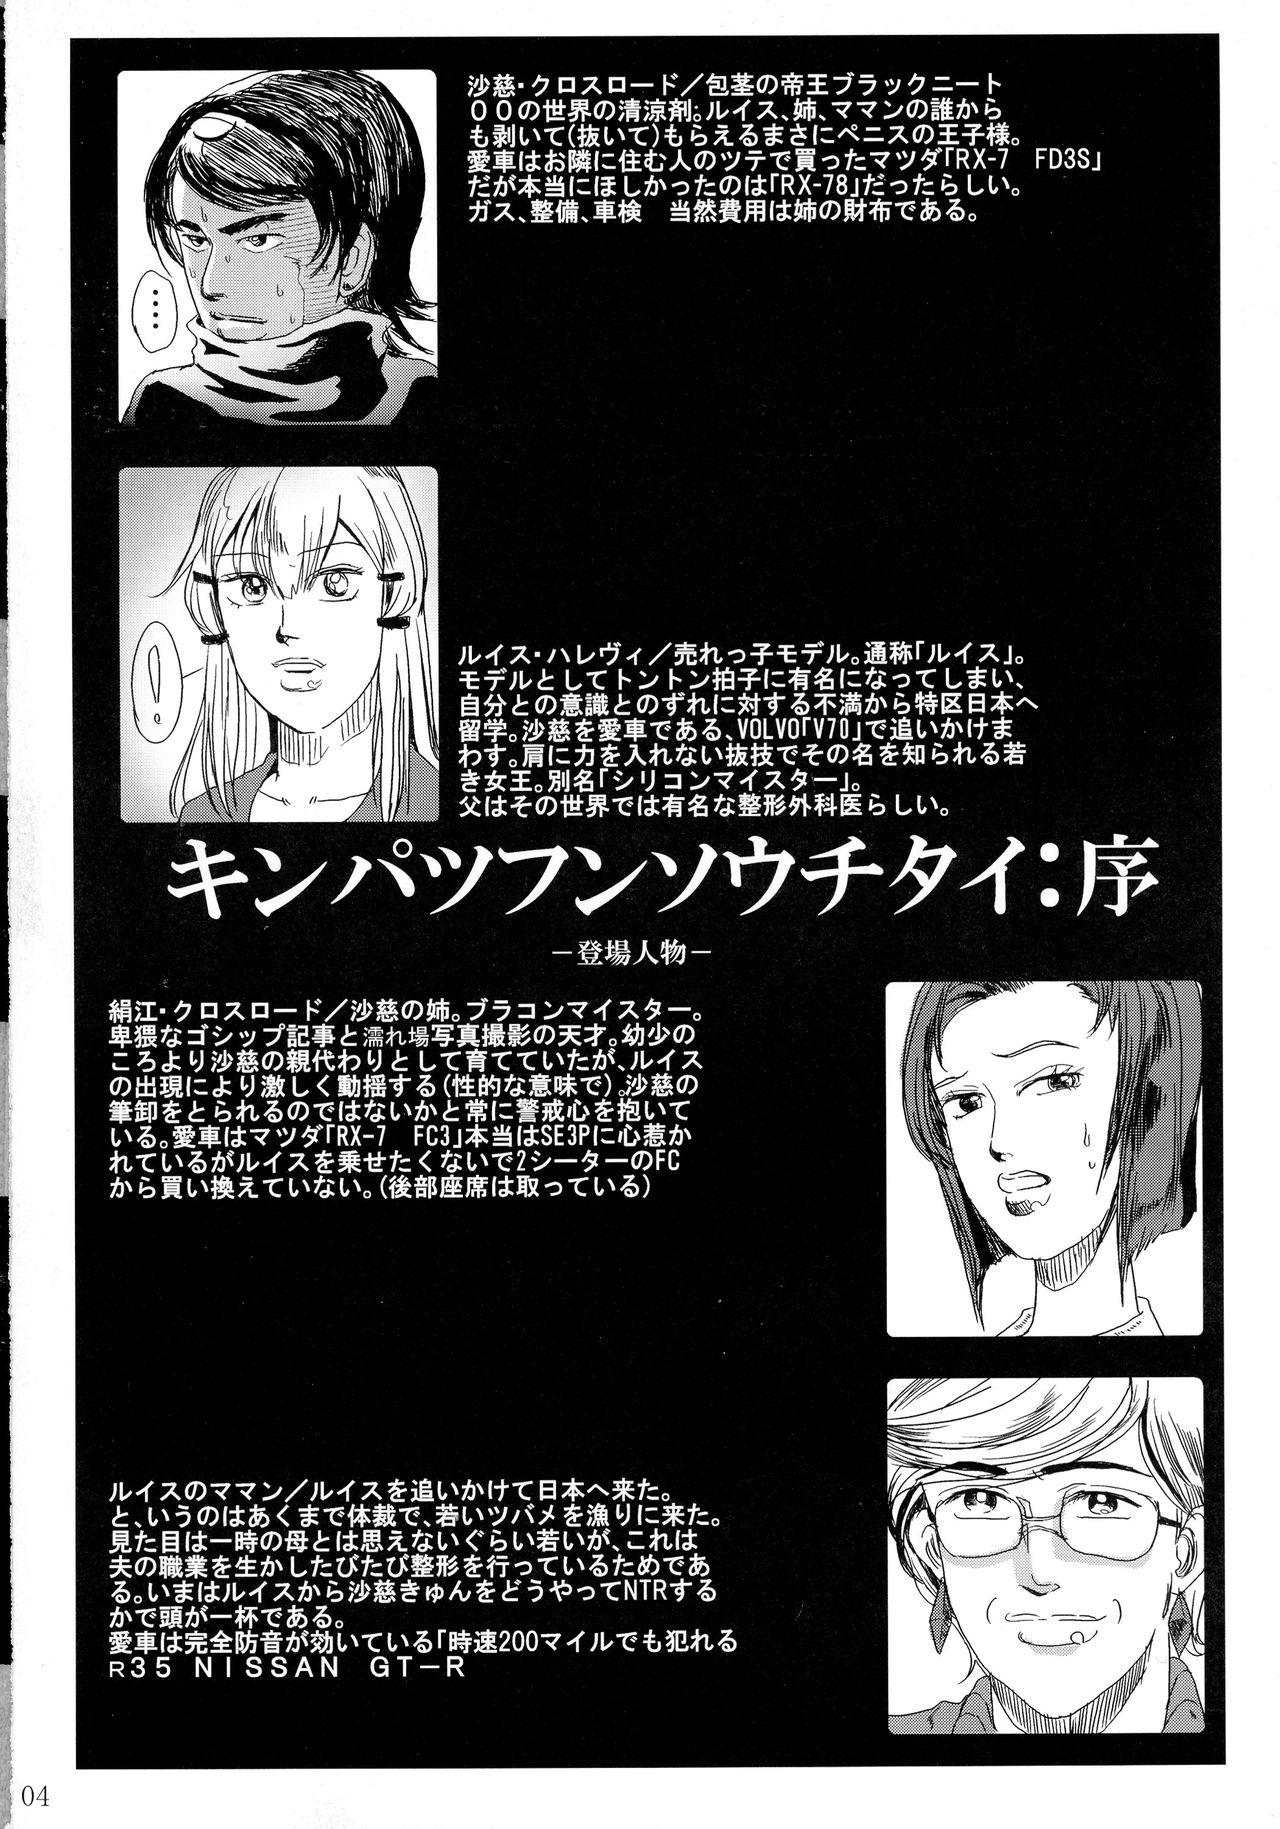 Police Kinpatsu Funsou Chitai - Gundam 00 Fitness - Page 3